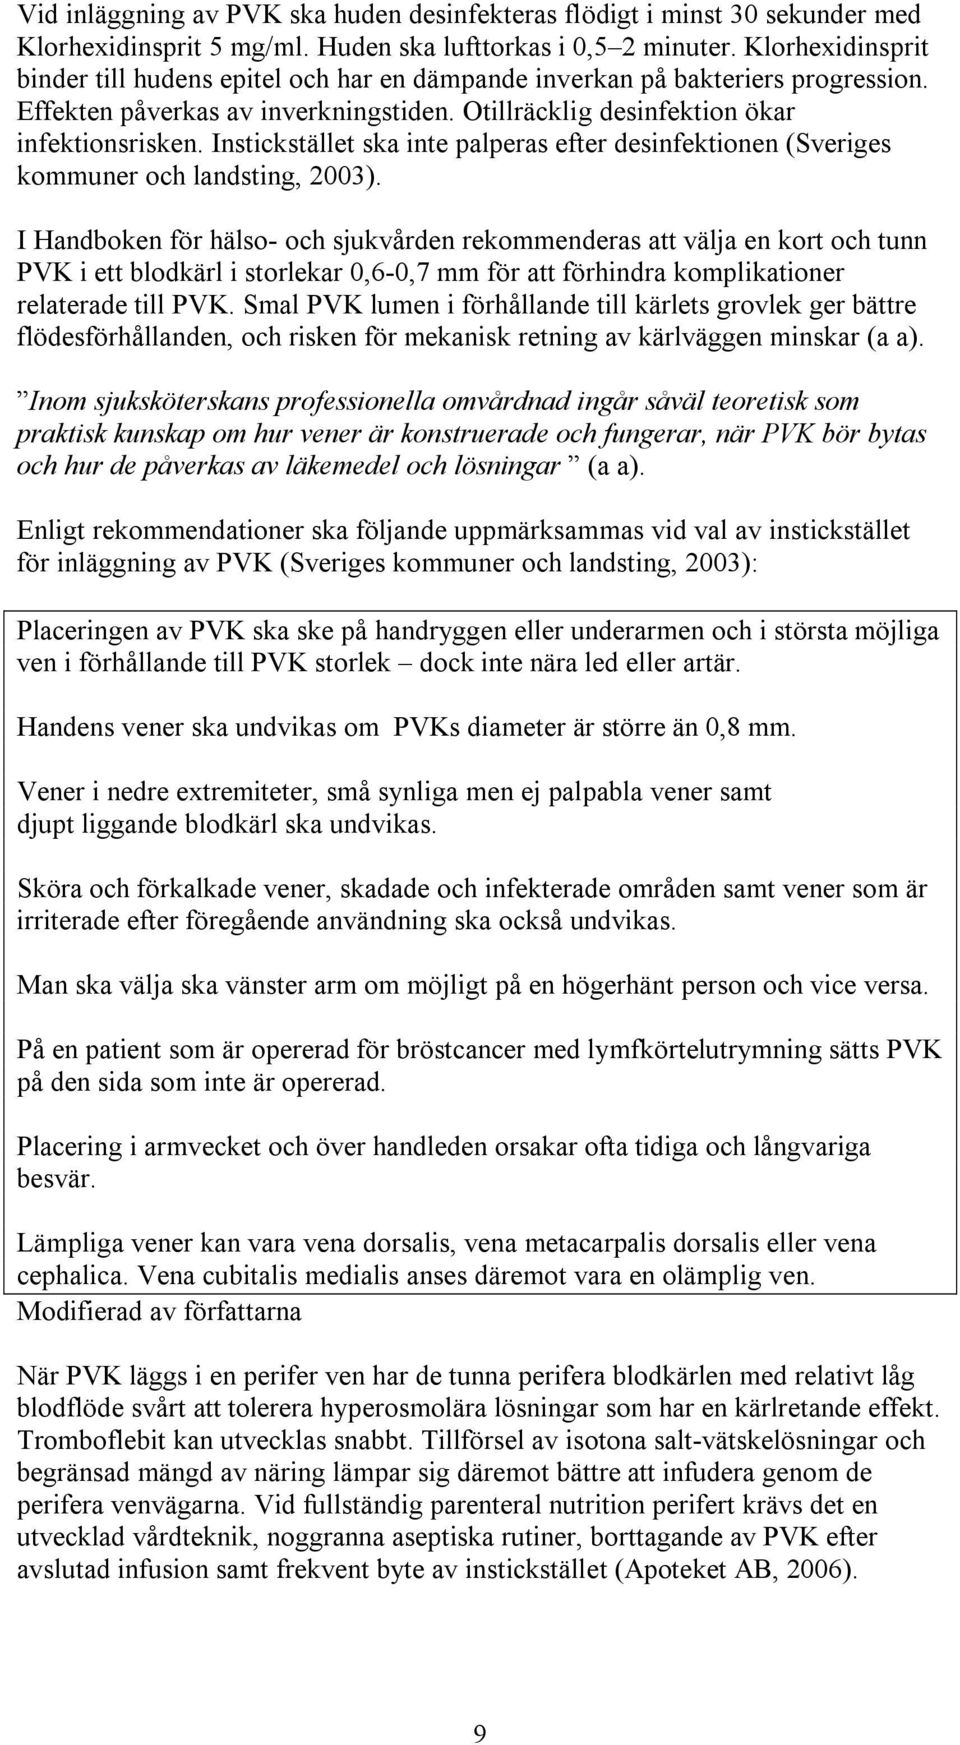 Instickstället ska inte palperas efter desinfektionen (Sveriges kommuner och landsting, 2003).